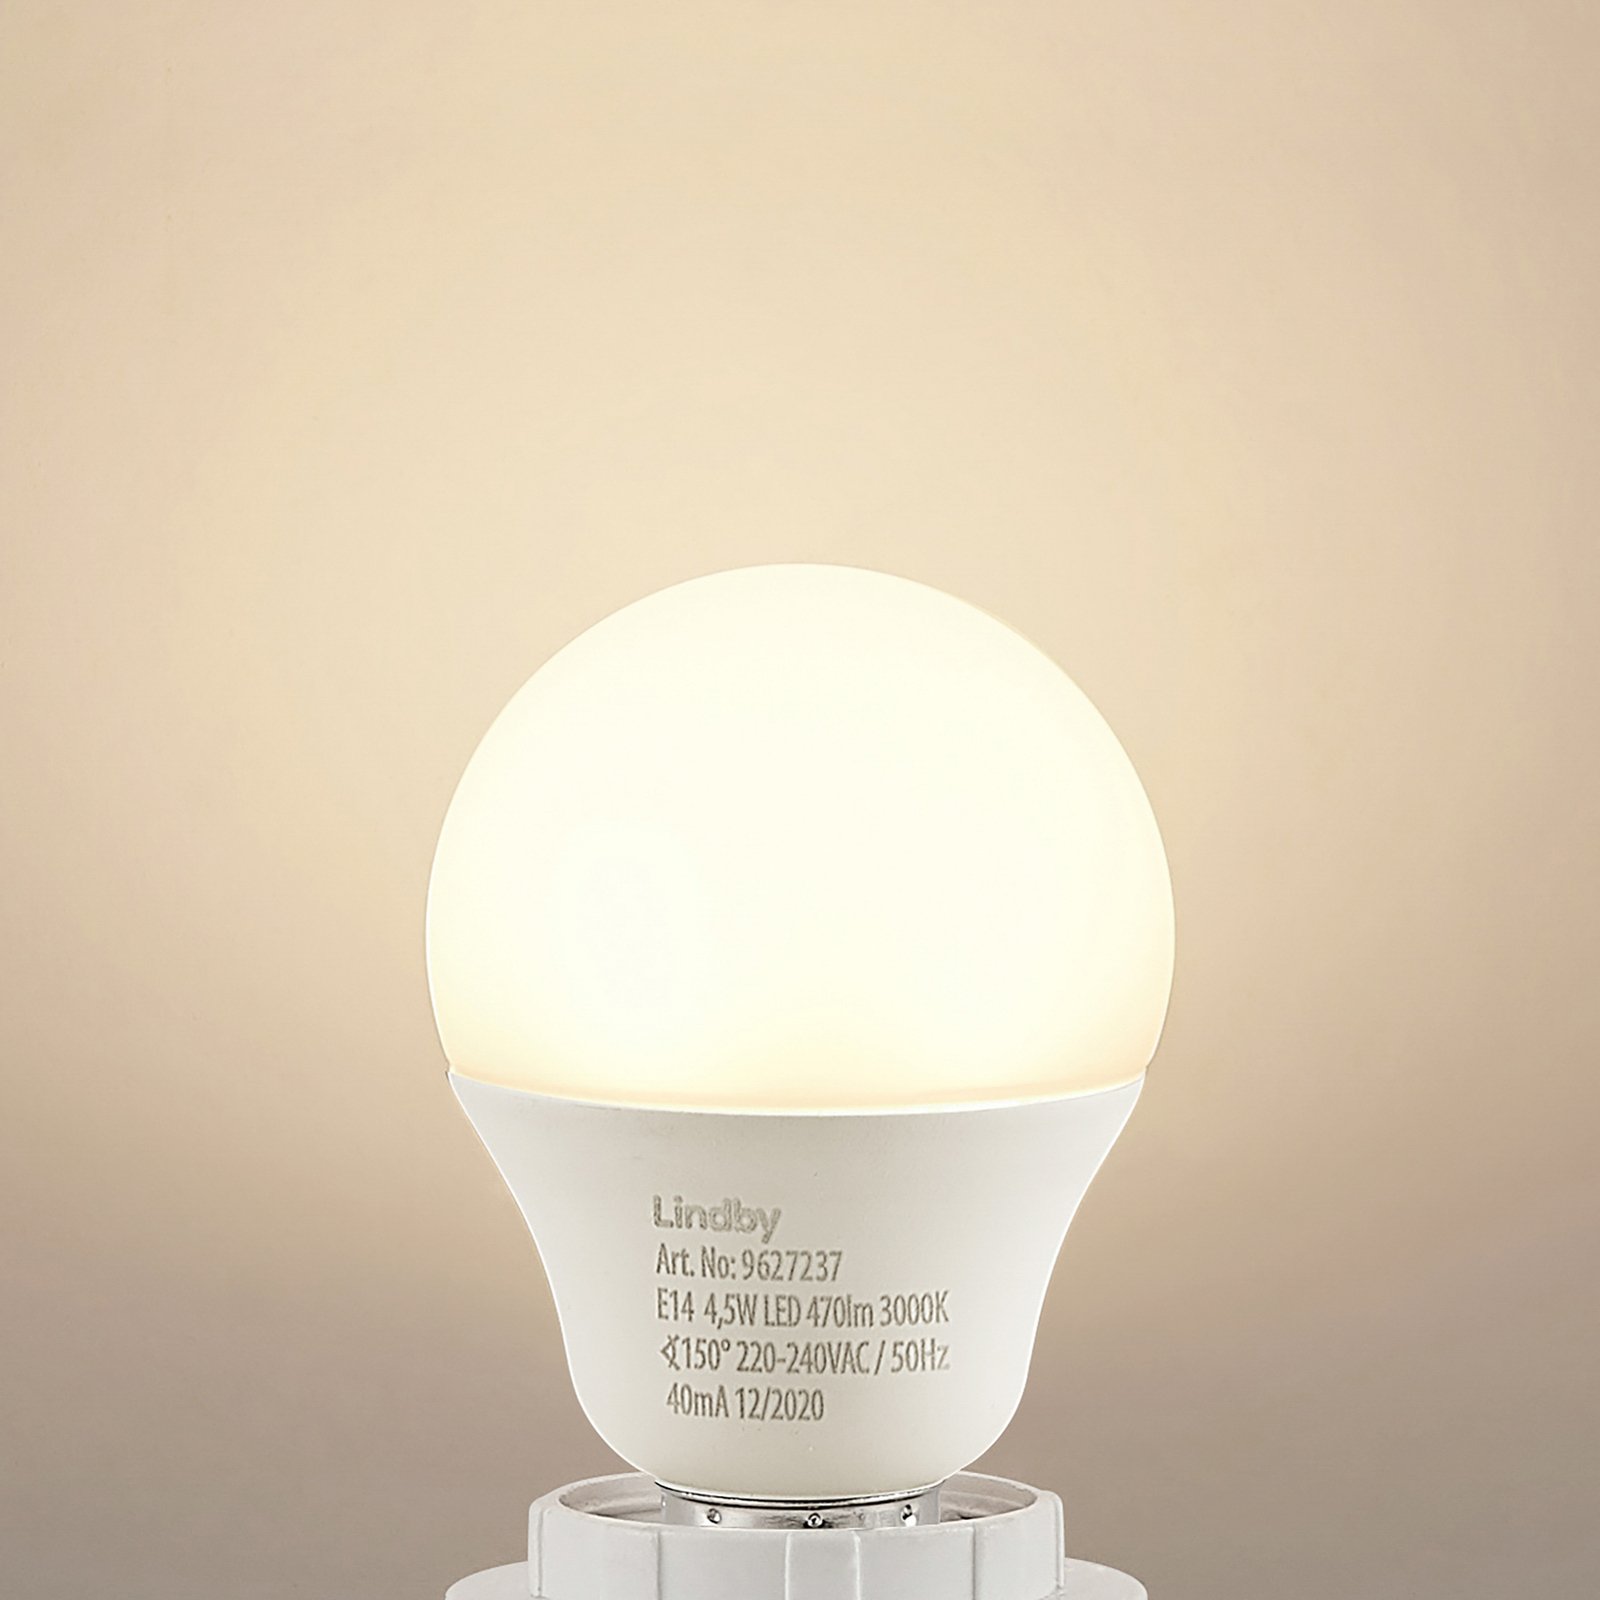 Lindby LED-lampe E14 G45 4,9W 3.000K opal sæt med 10 stk